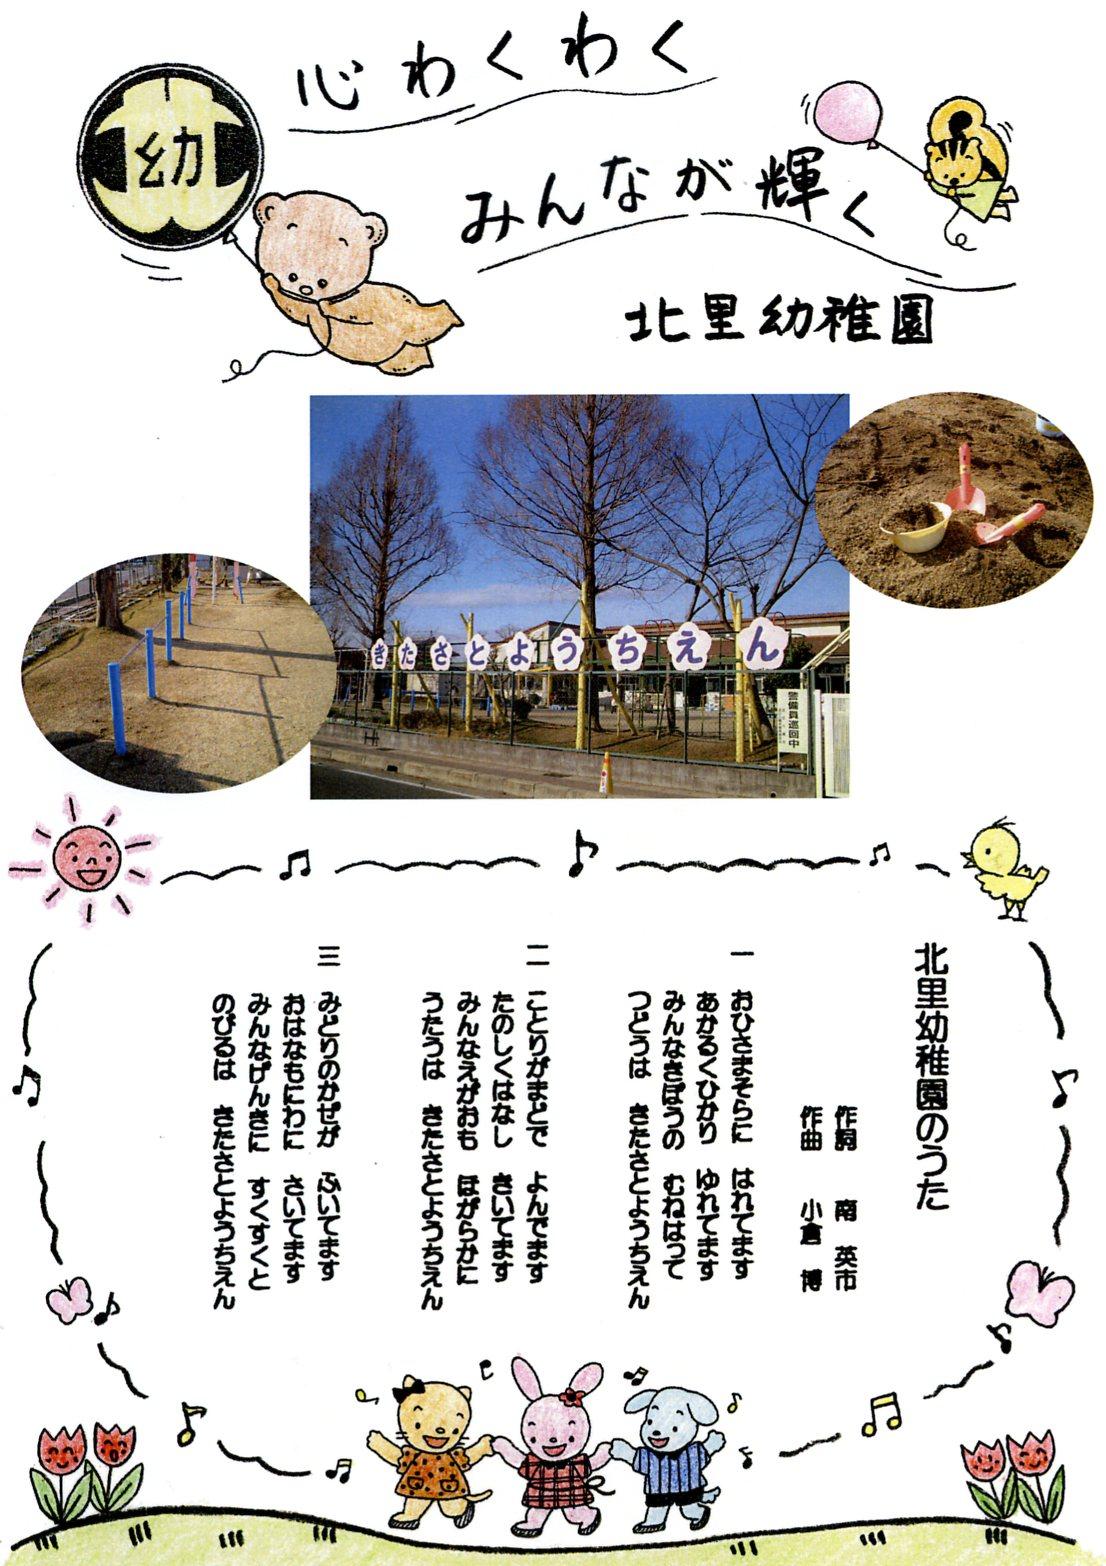 園庭から見た北里幼稚園の園舎と北里幼稚園の園歌の歌詞の画像、詳細は以下